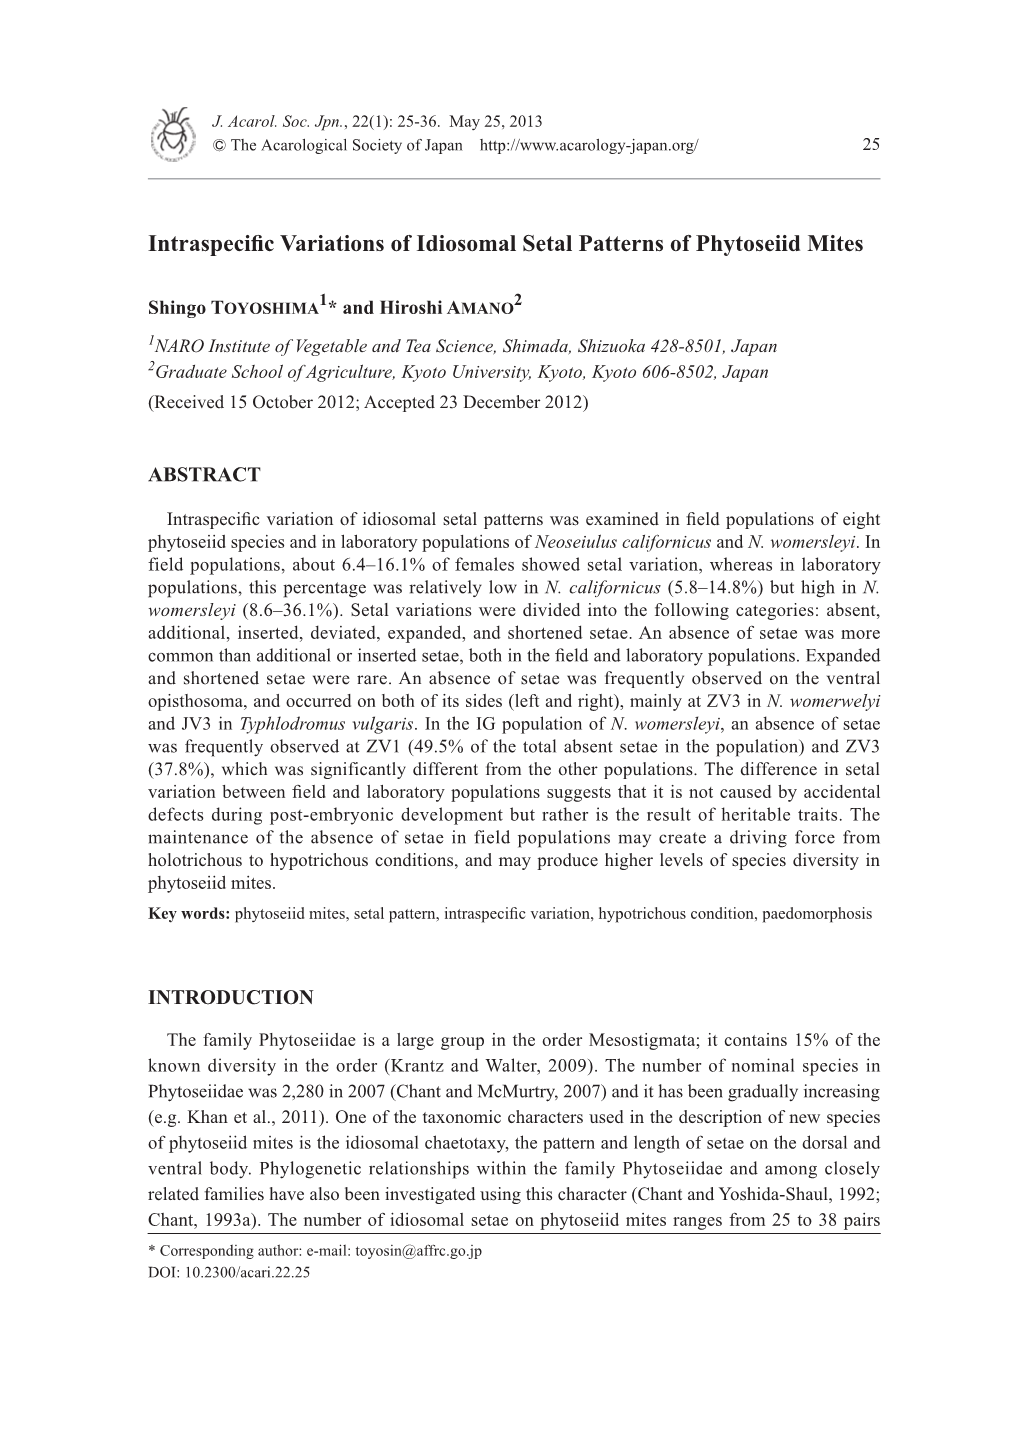 Intraspecific Variations of Idiosomal Setal Patterns of Phytoseiid Mites